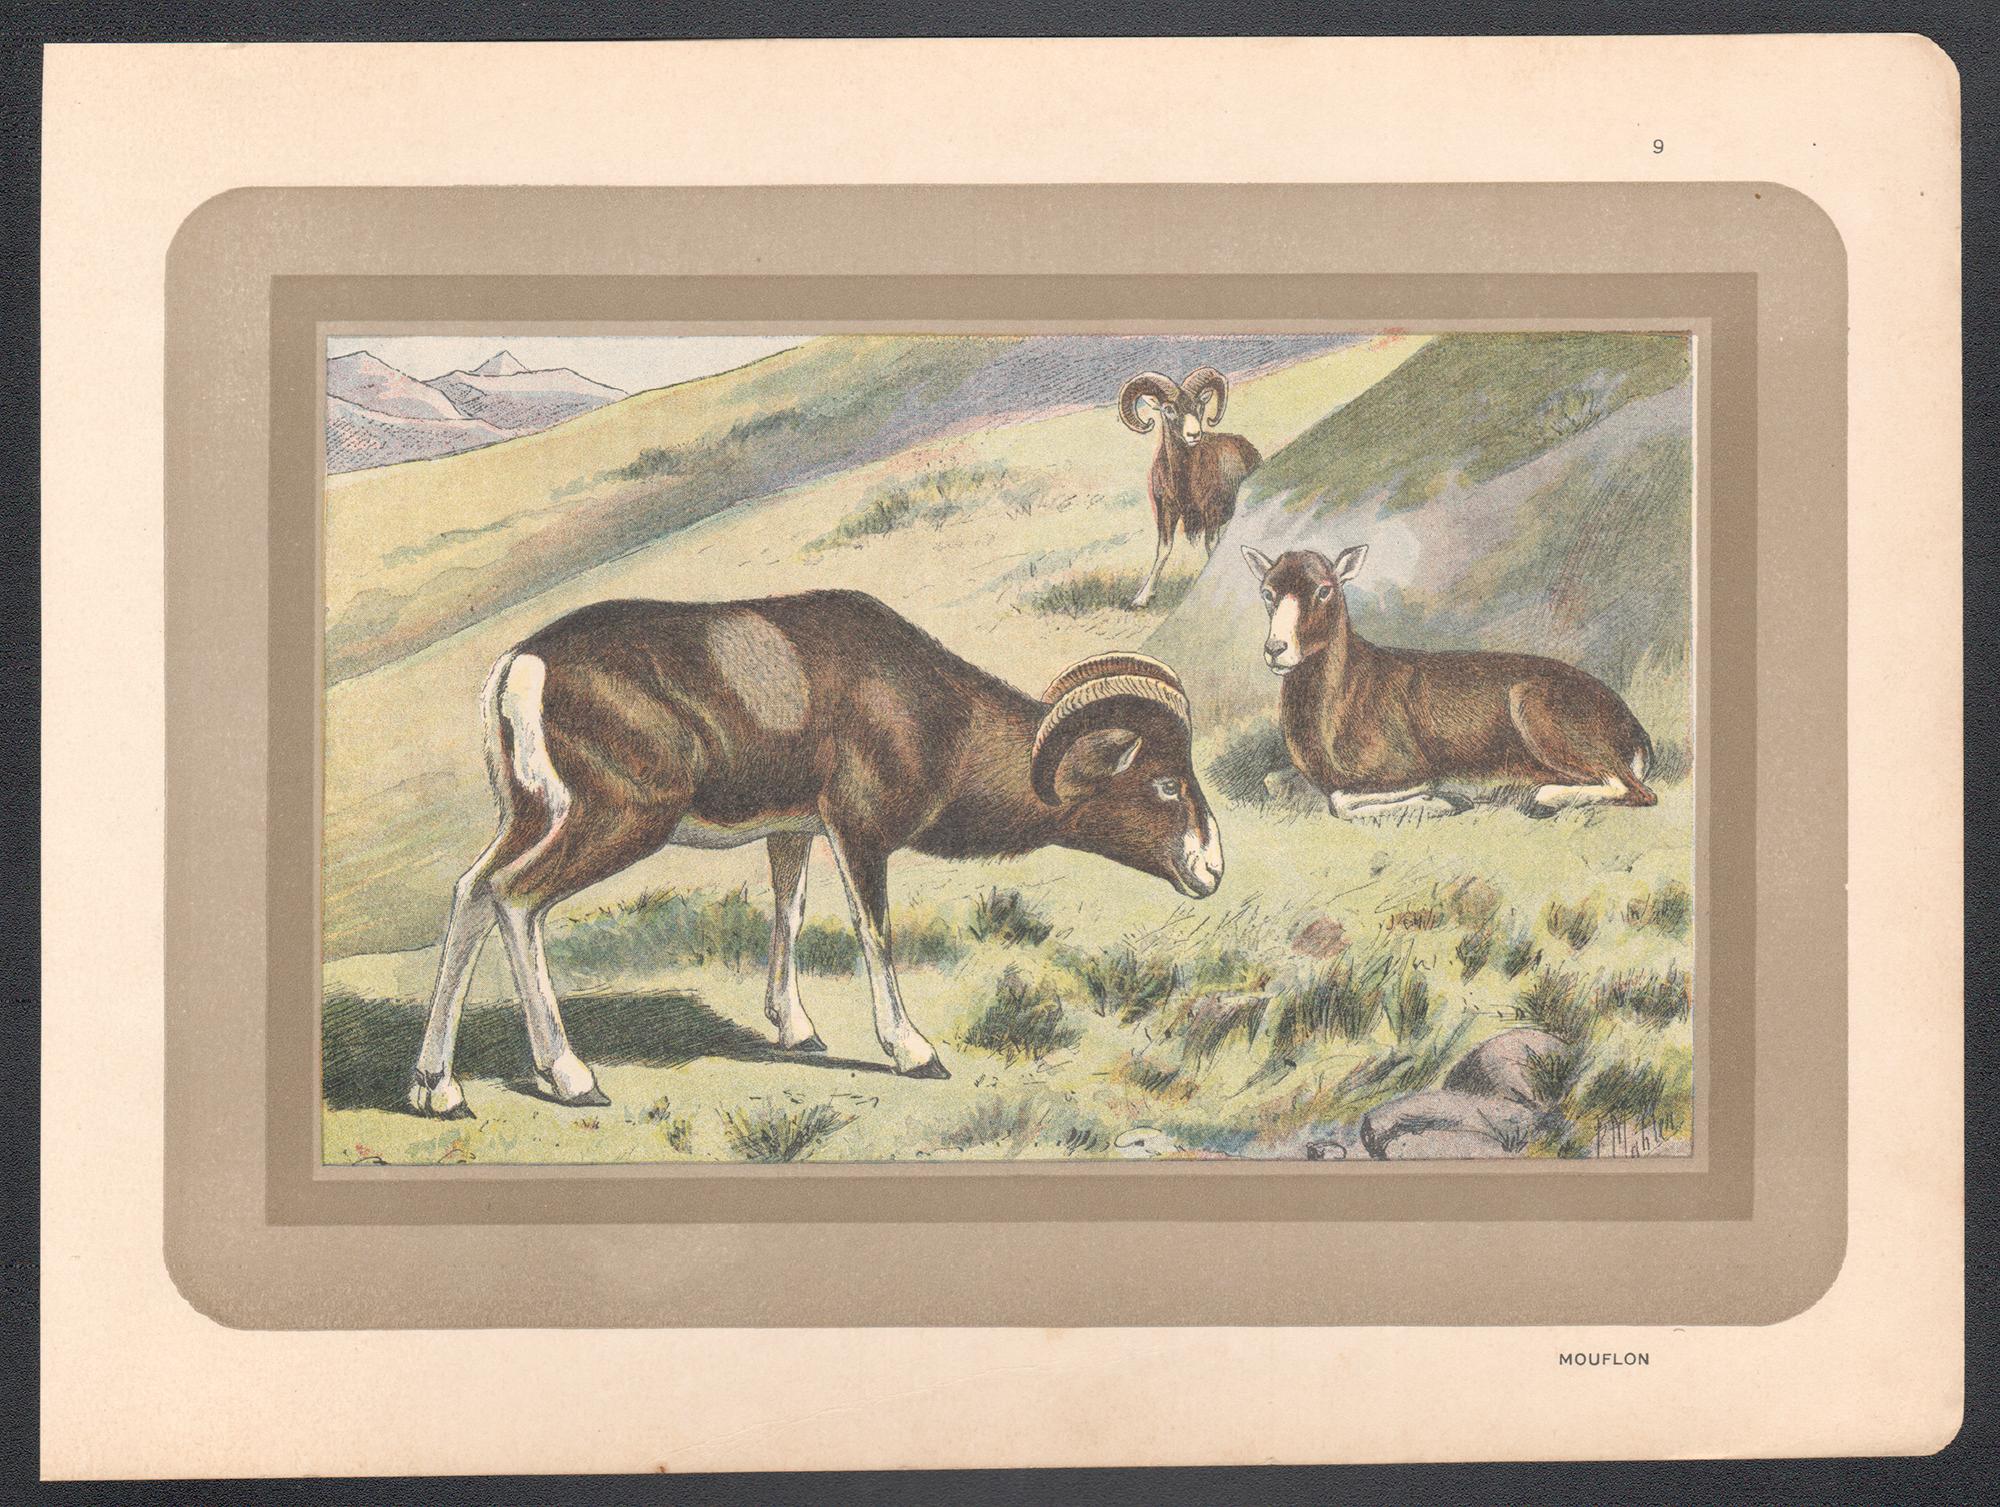 Mouflon, gravure d'art animalier d'histoire naturelle française antique - Print de Unknown